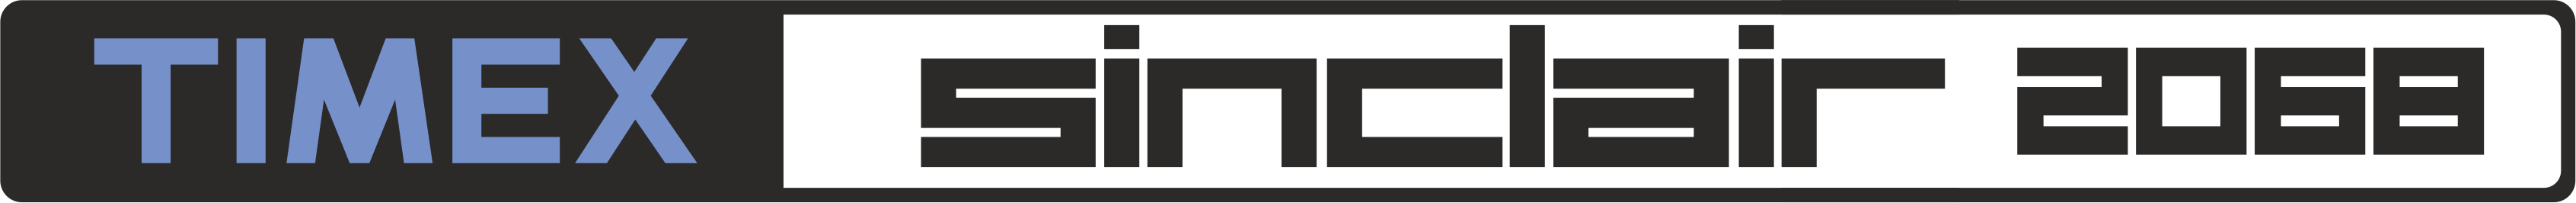 Timex Sinclair TS-2068: logo